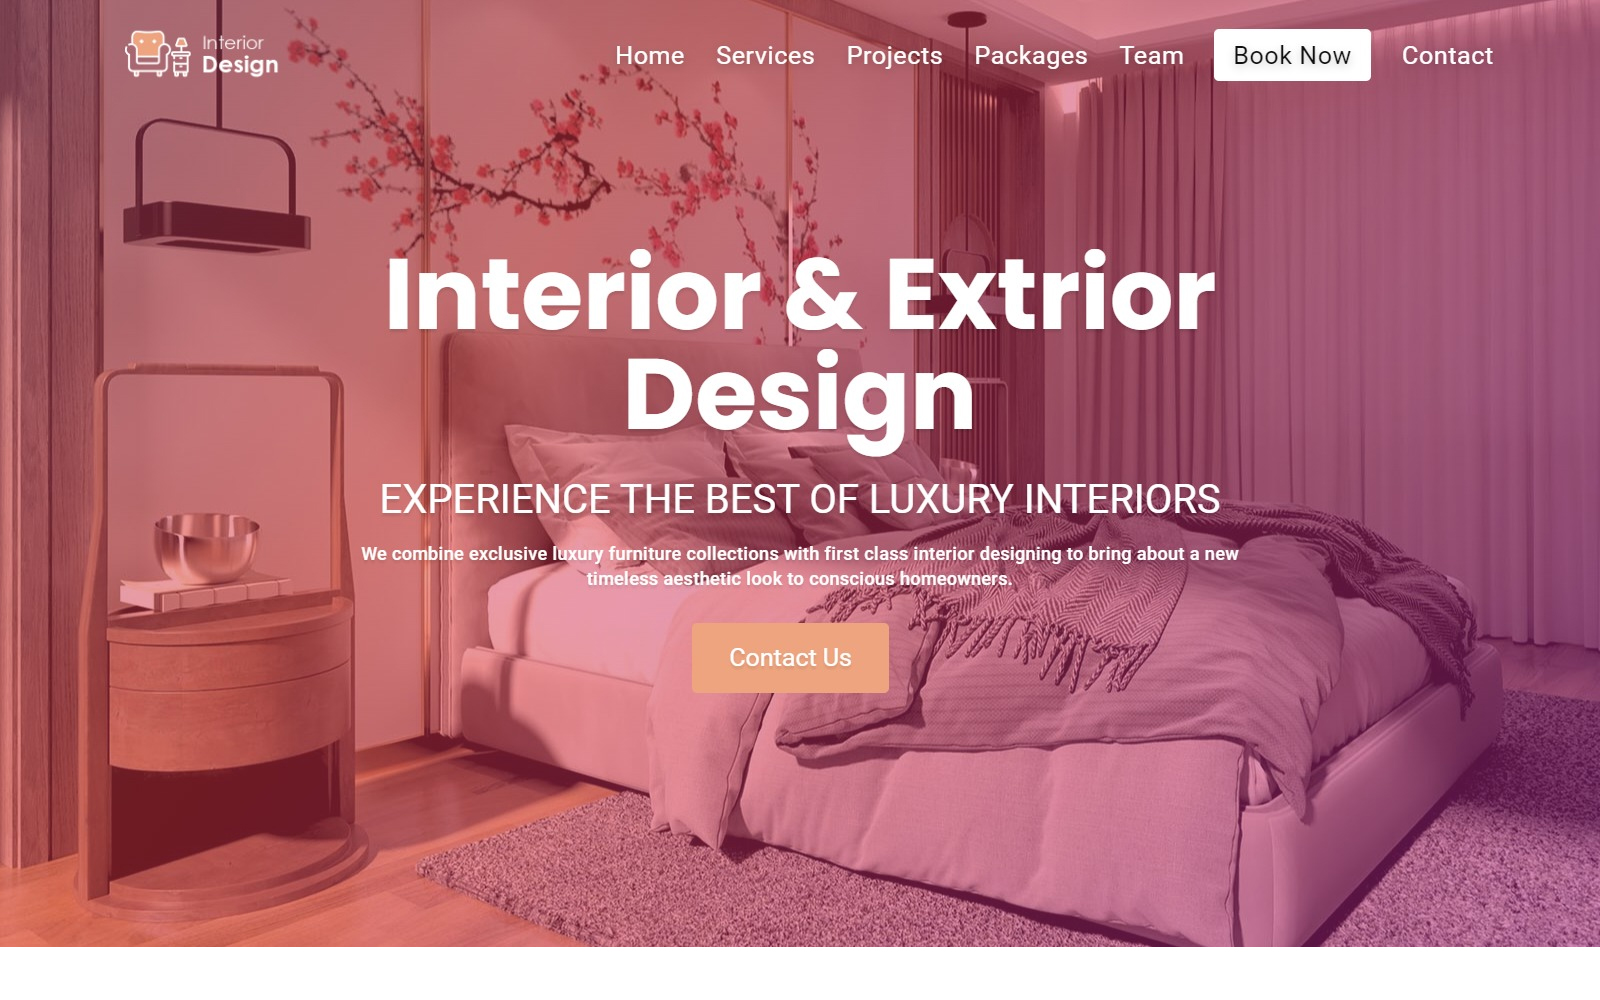 Intex - Interior & Exterior Design Studio Website Template